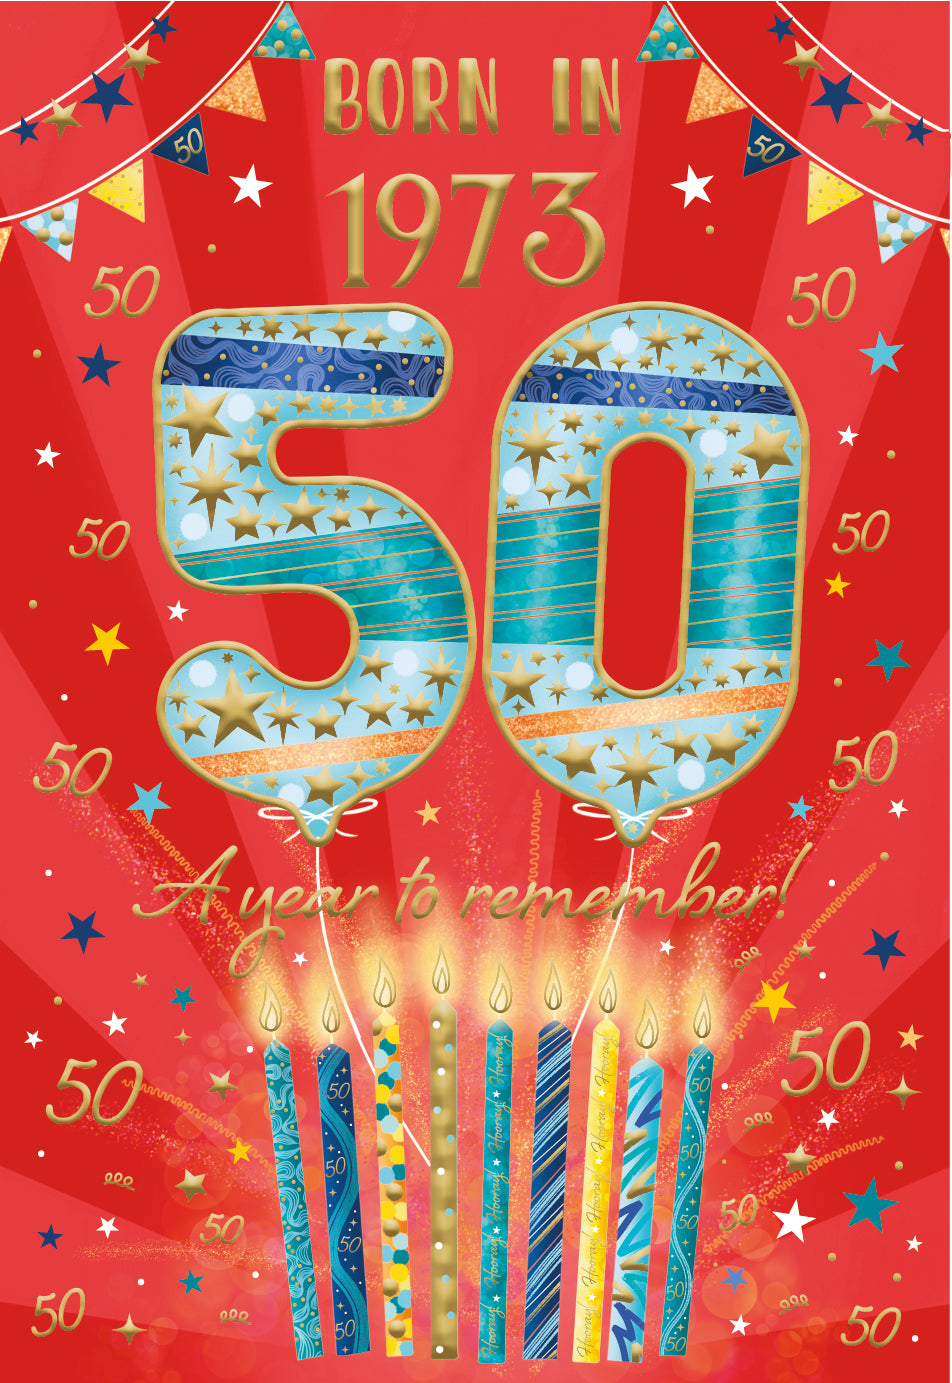 50th birthday card - born in 1973